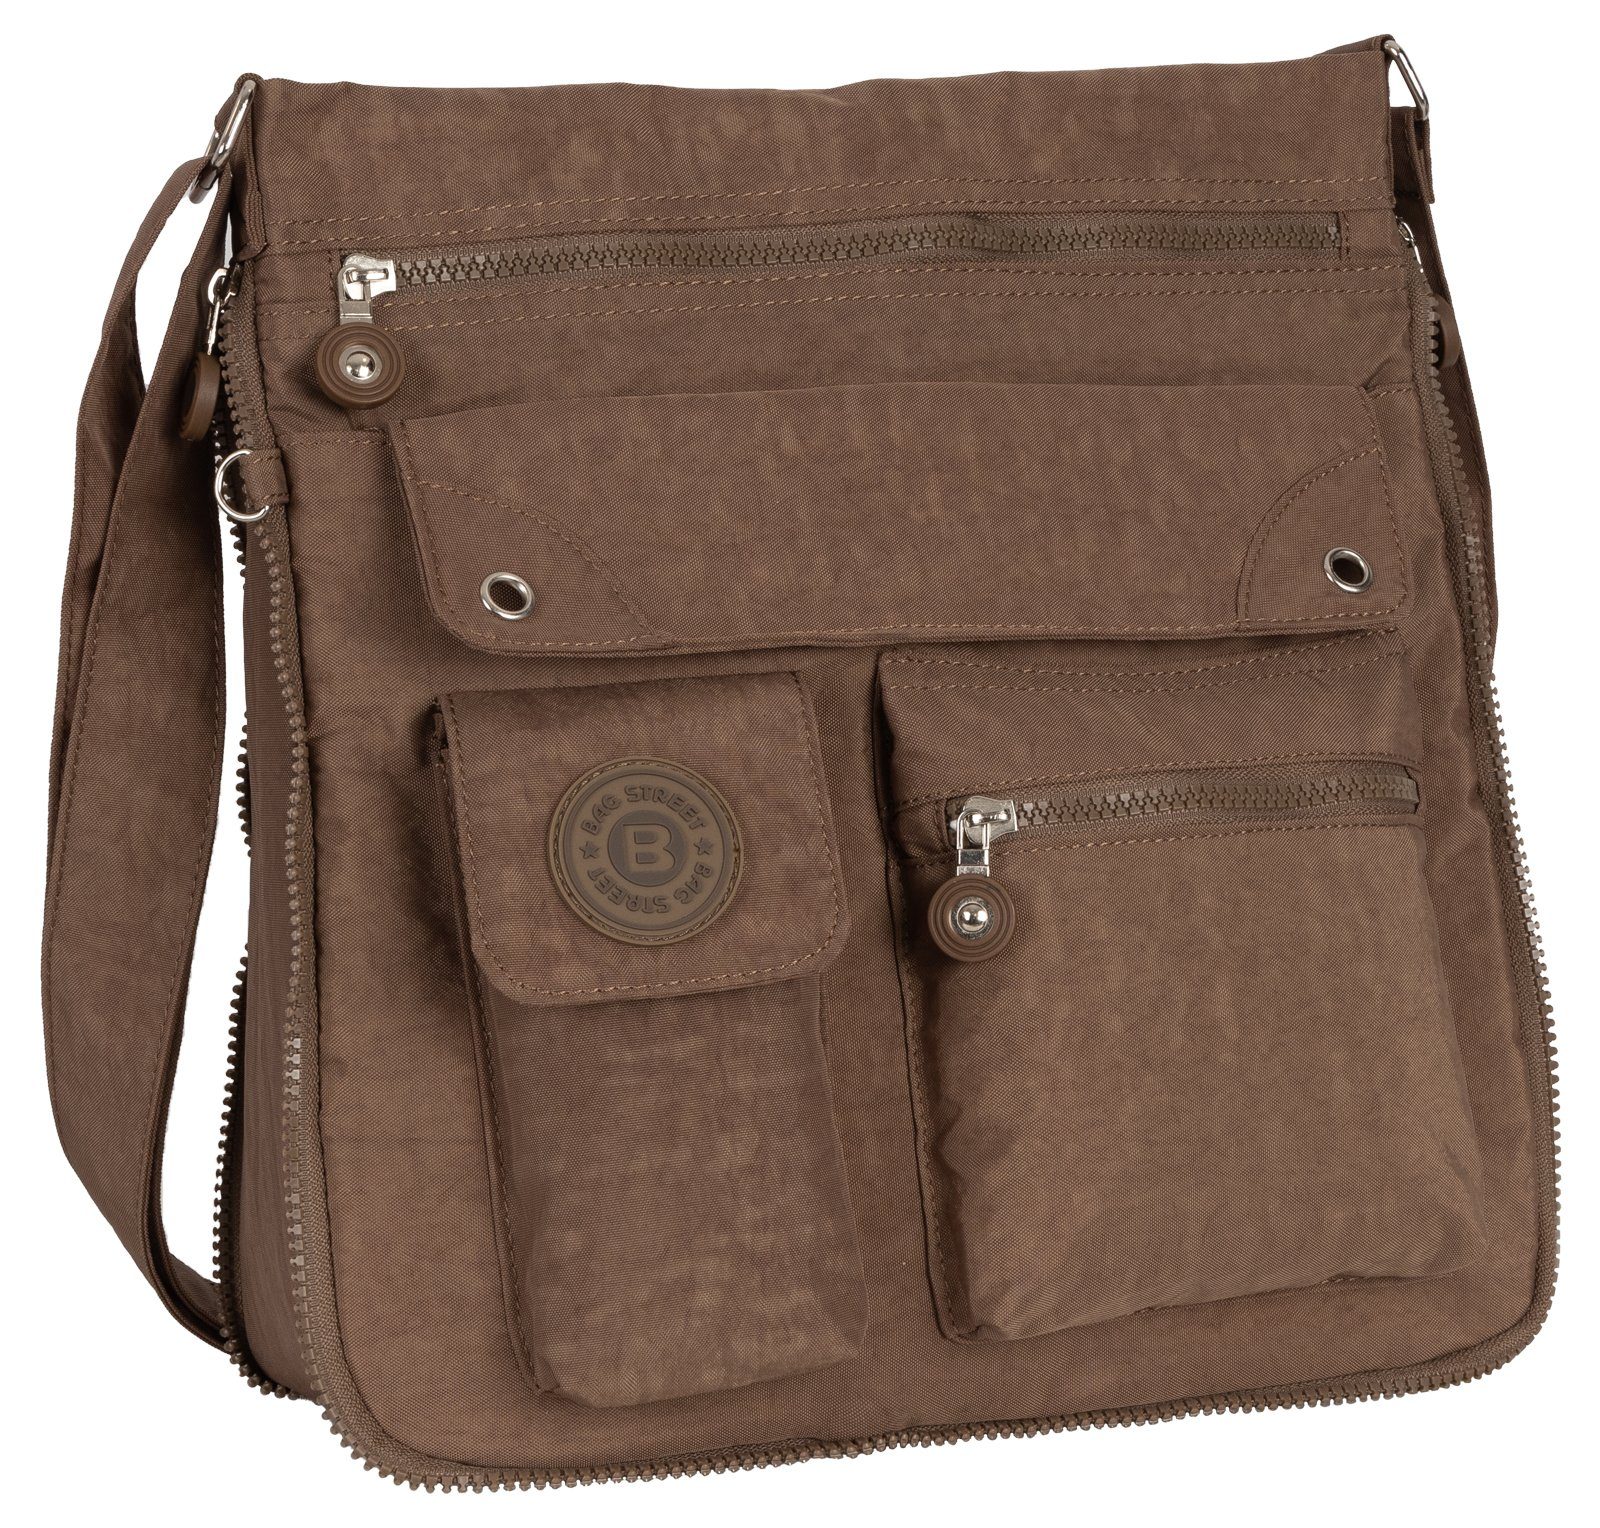 BAG STREET Schlüsseltasche Schultertasche Schultertasche, Damentasche tragbar als Handtasche Umhängetasche Braun Schwarz, Umhängetasche